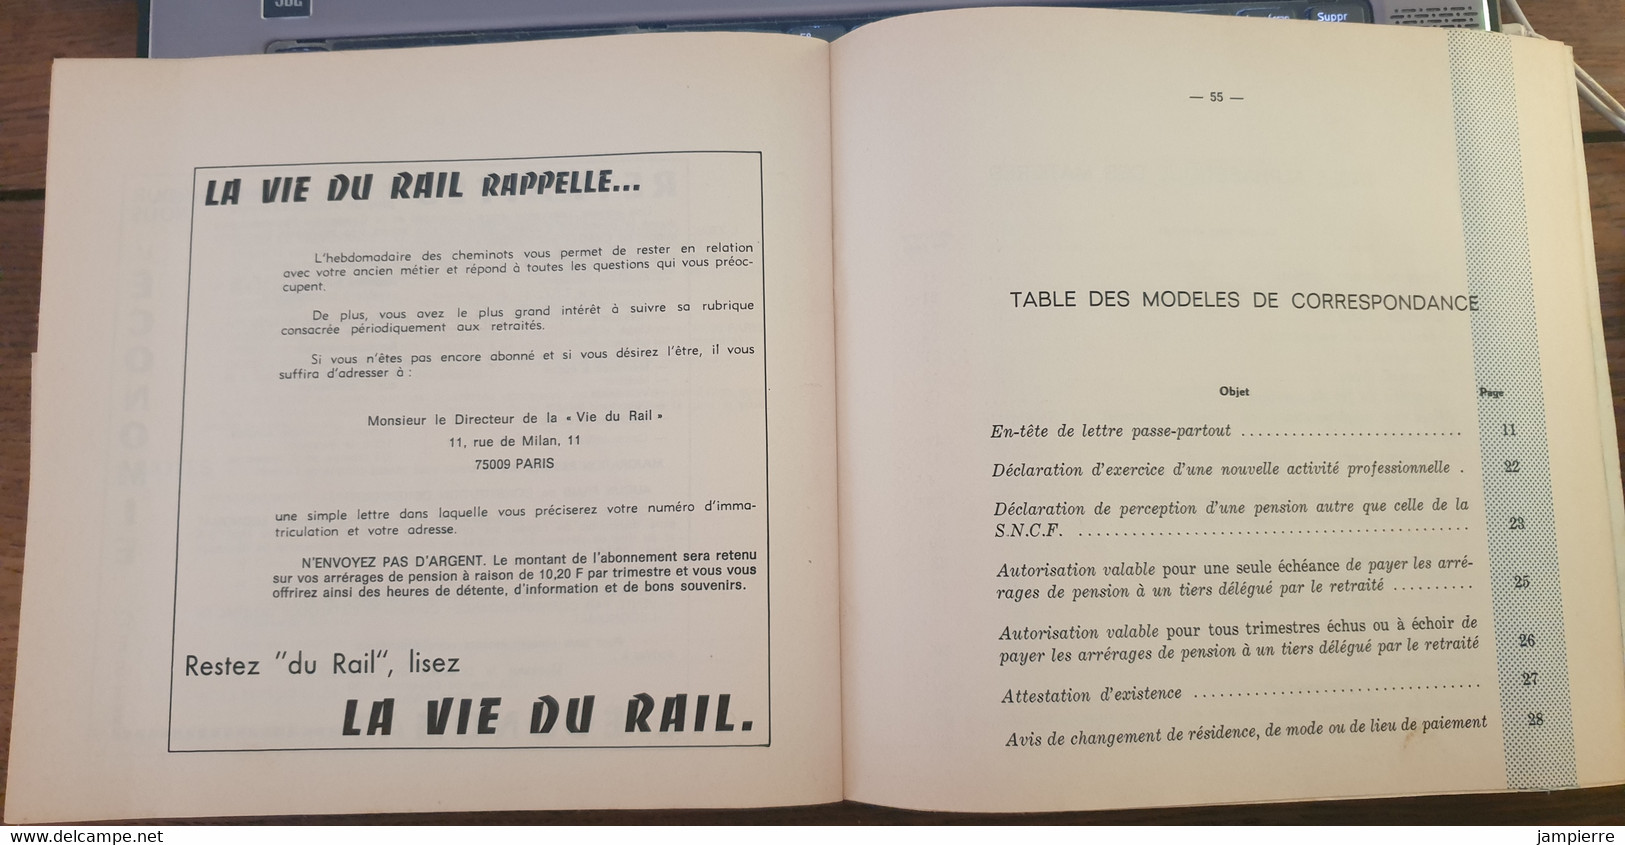 SNCF - Guide du retraité (1973) - 62 pages